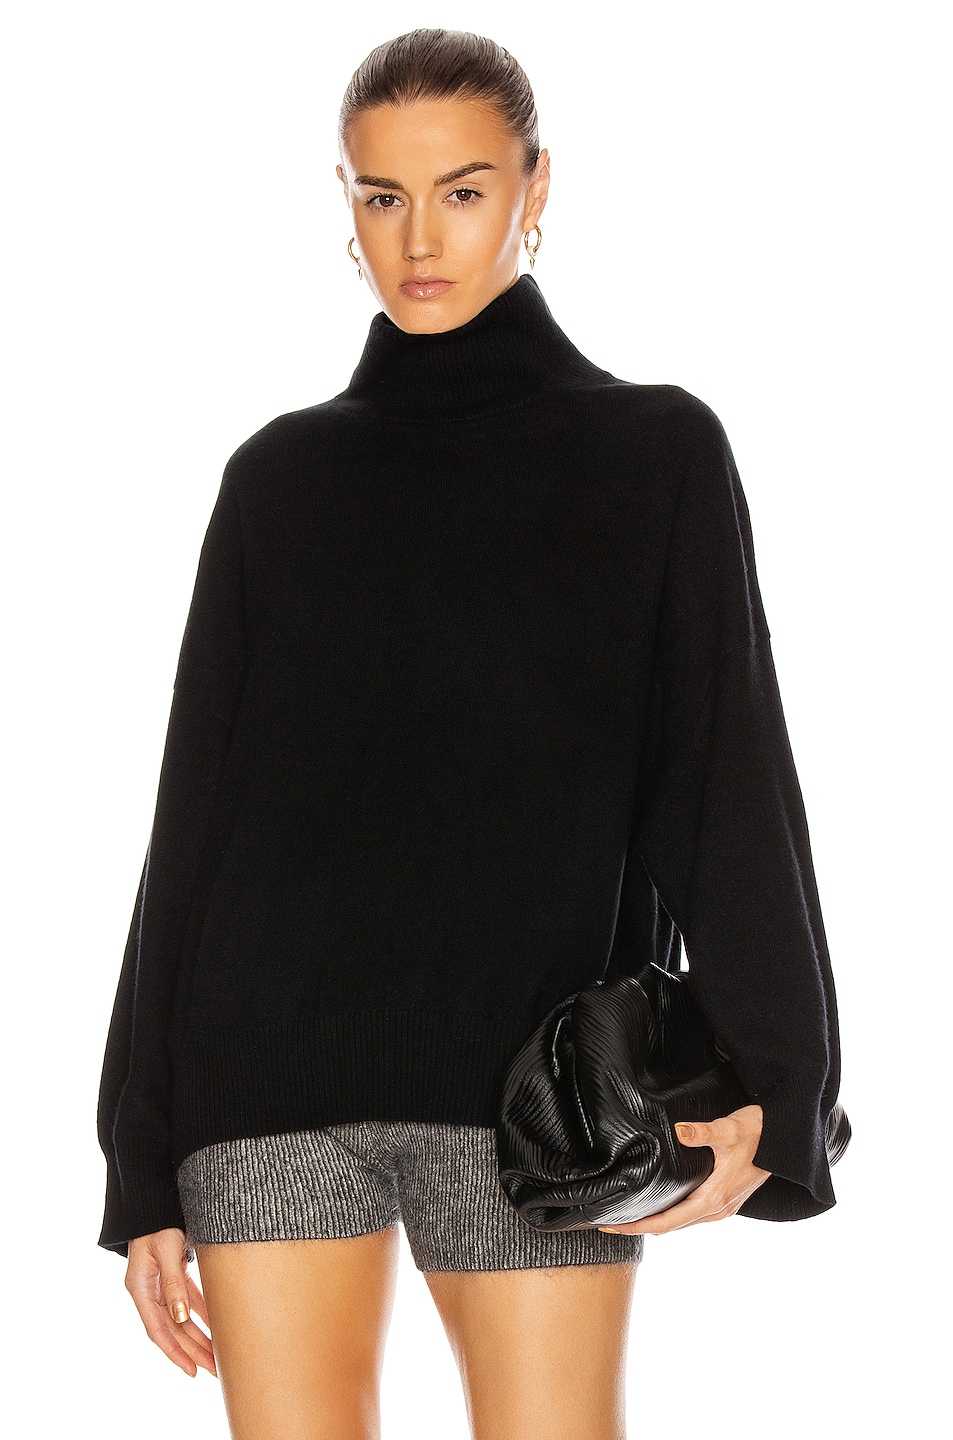 Loulou Studio Murano Cashmere Sweater in Black | FWRD